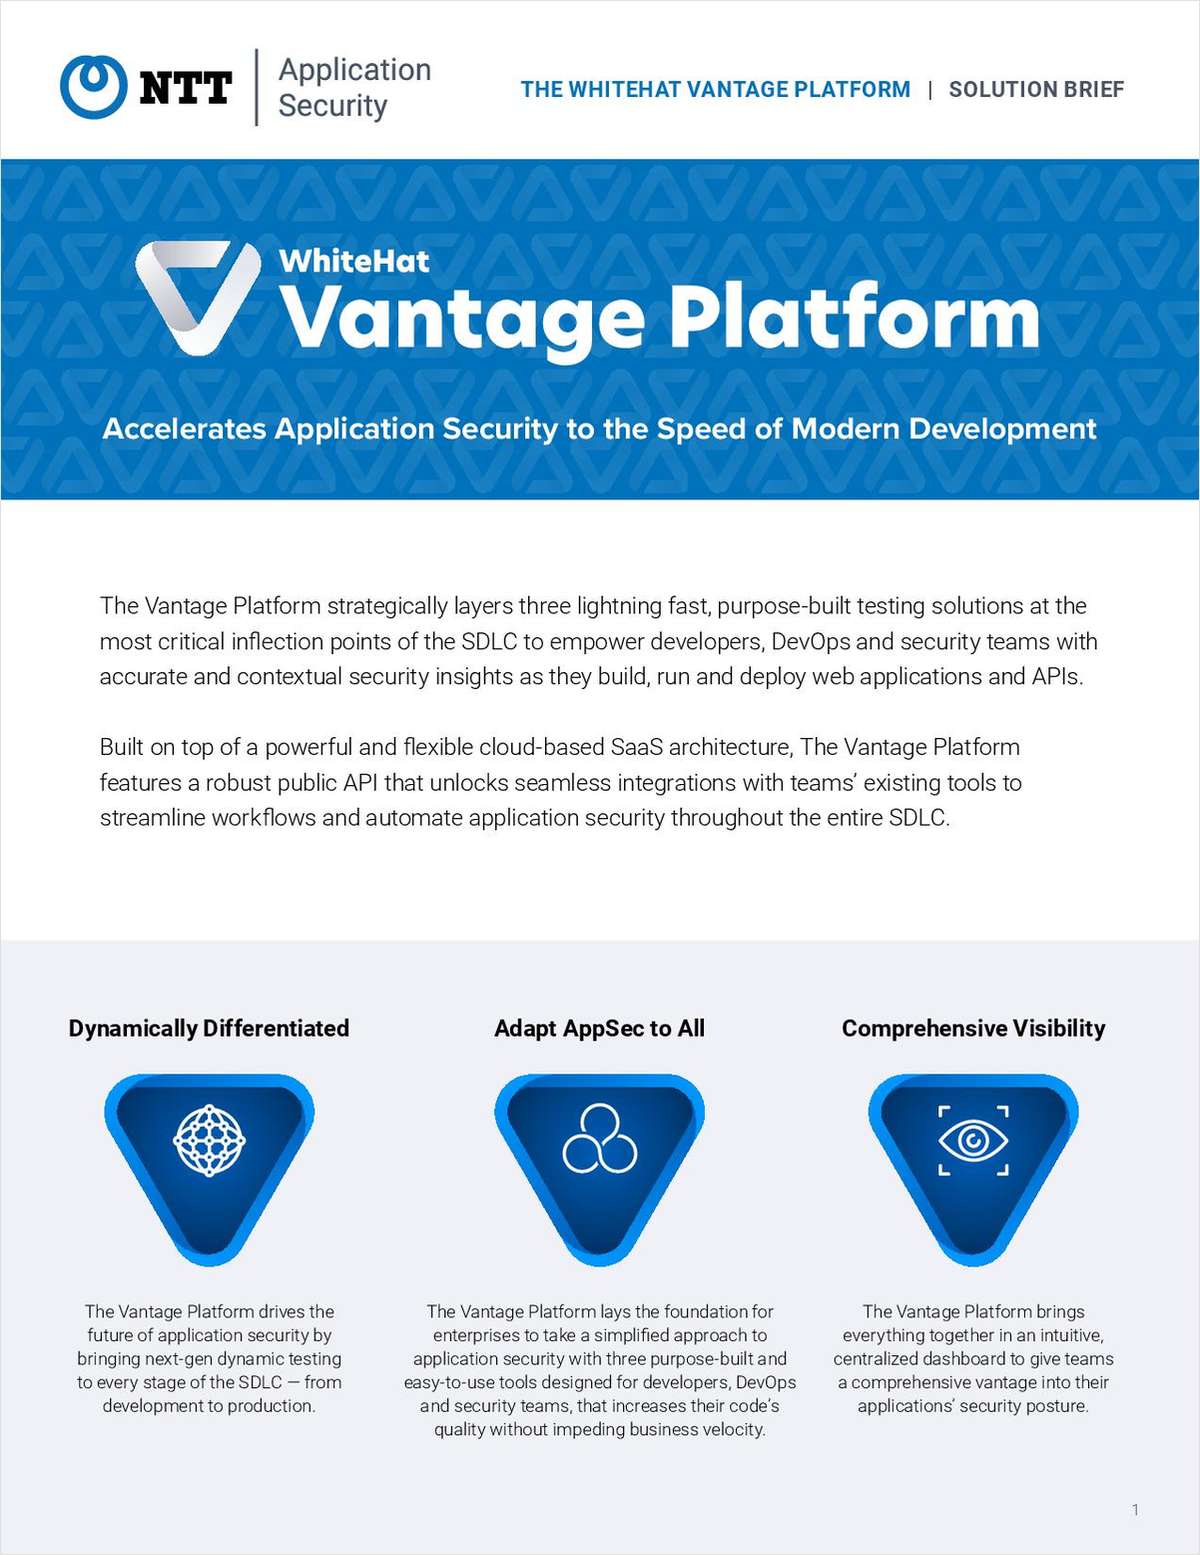 WhiteHat Vantage Platform Solution Brief